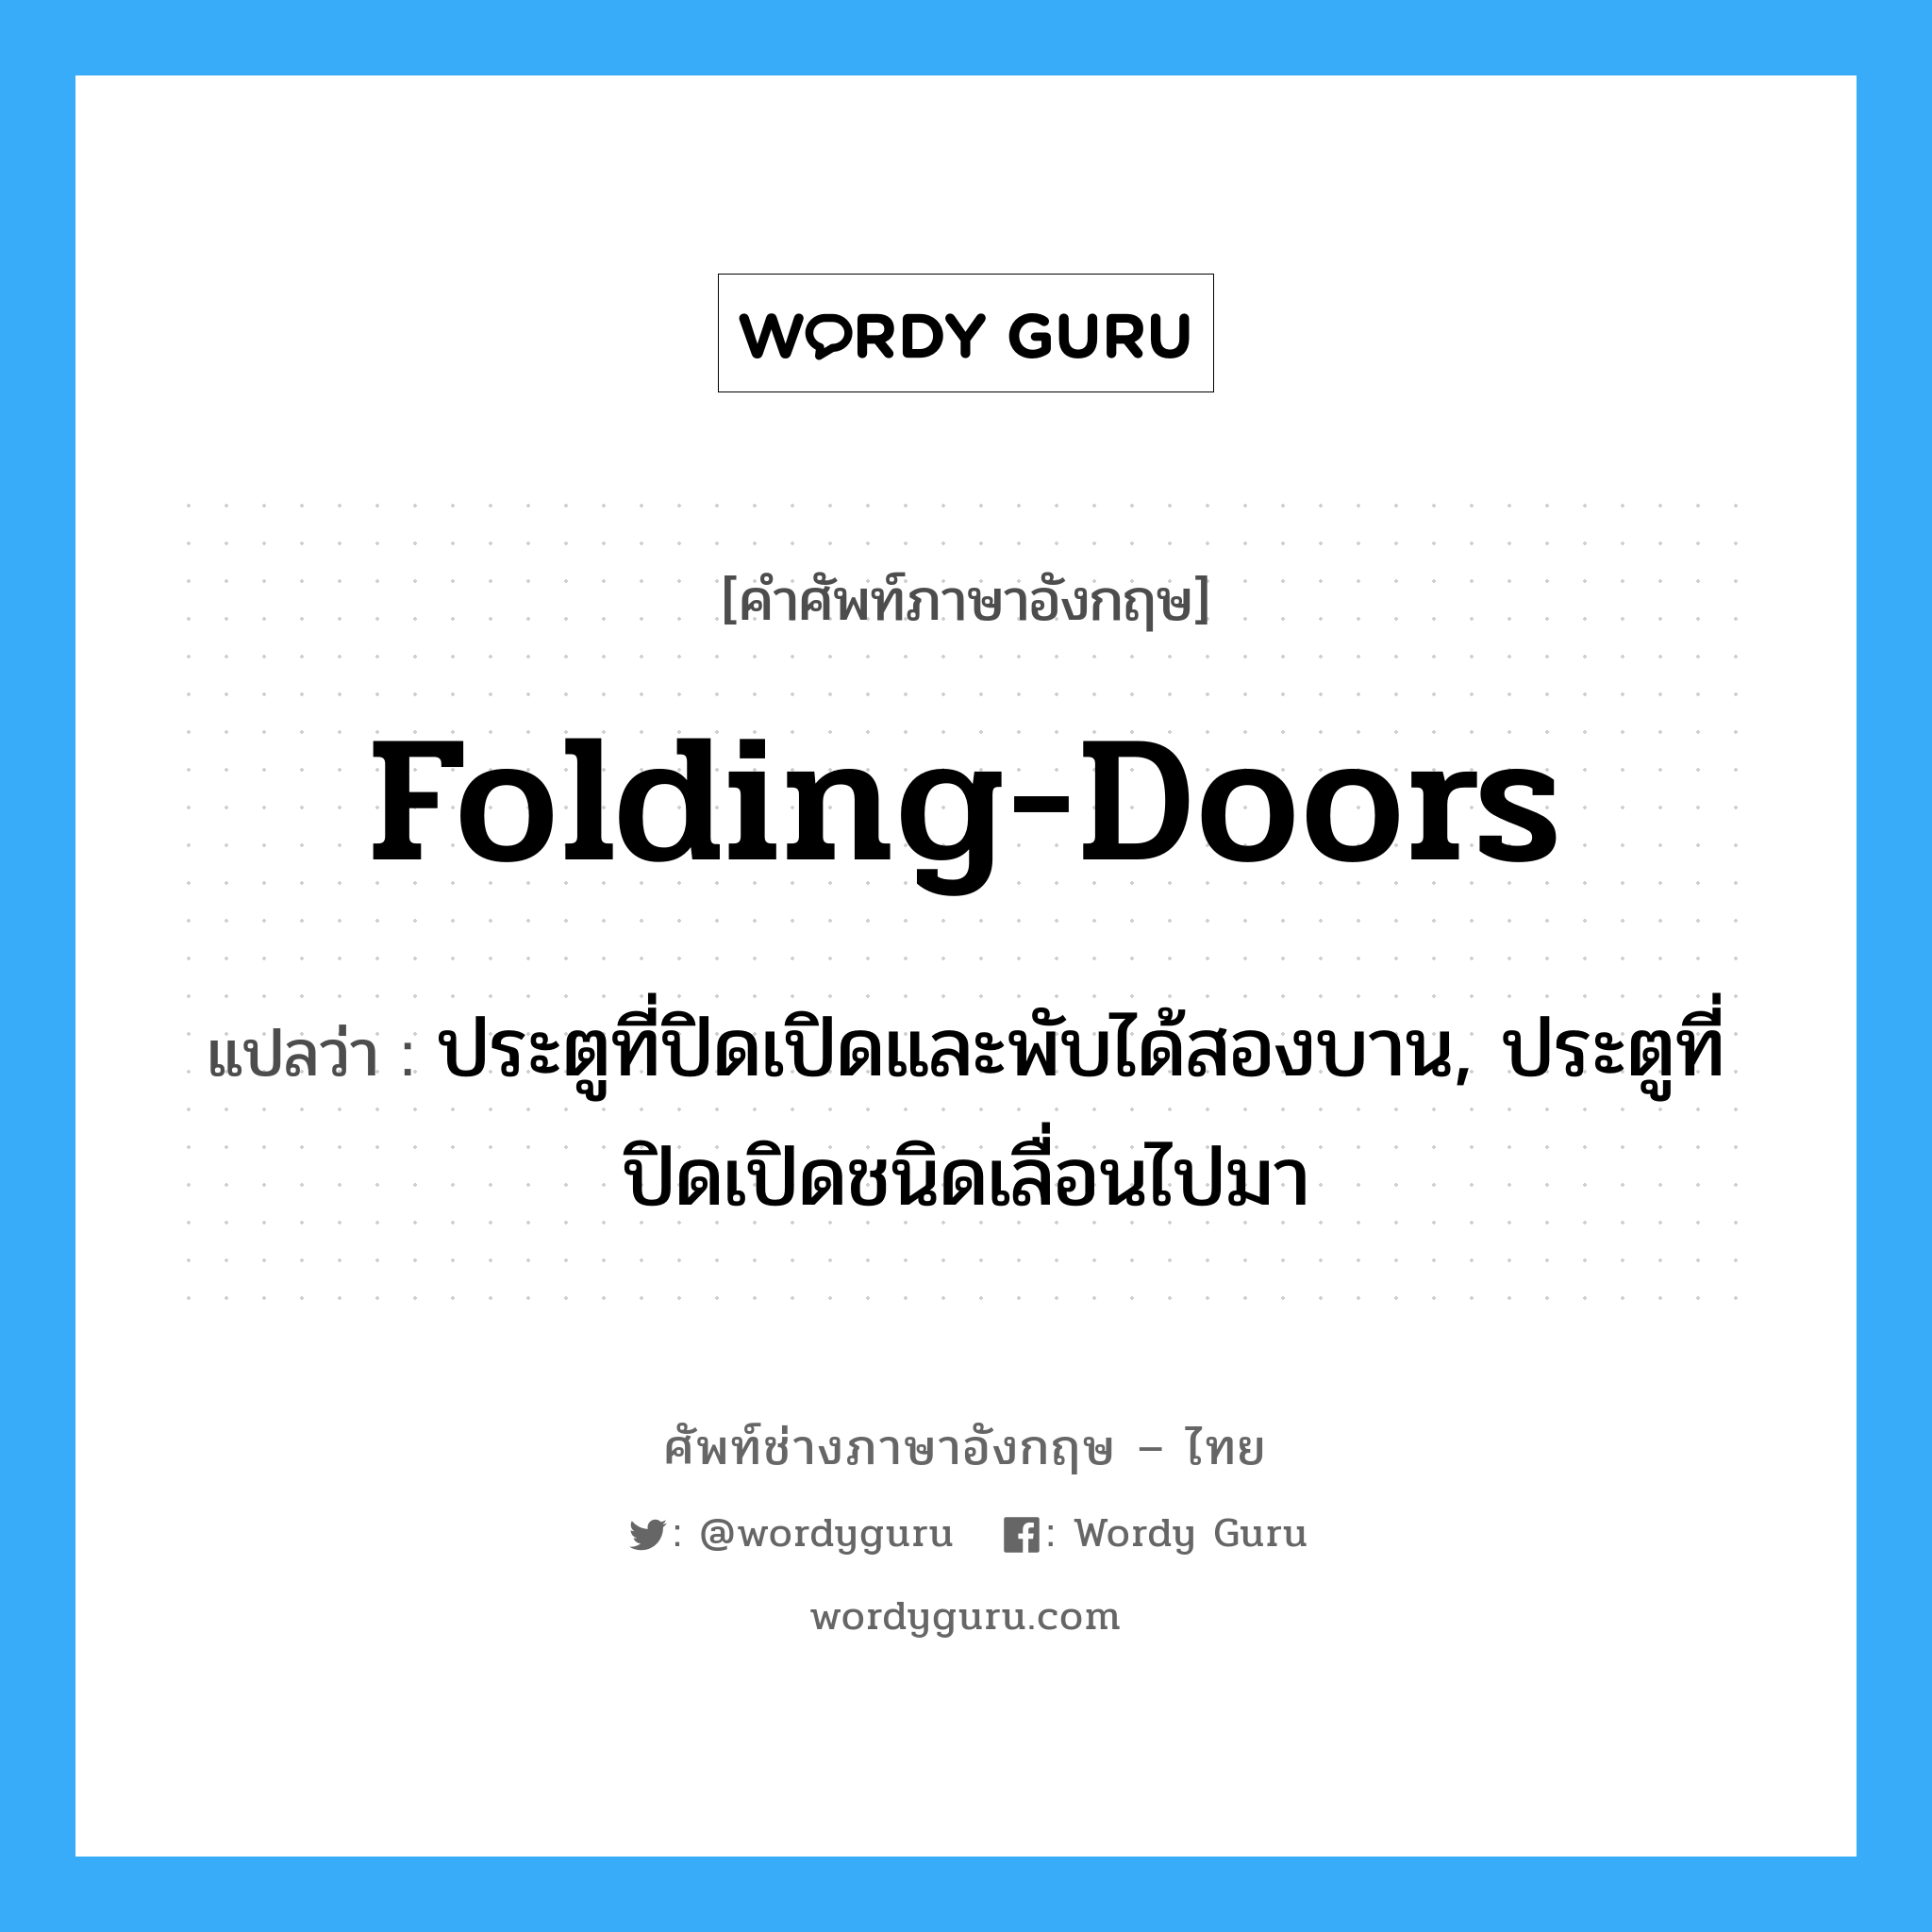 folding doors แปลว่า?, คำศัพท์ช่างภาษาอังกฤษ - ไทย folding-doors คำศัพท์ภาษาอังกฤษ folding-doors แปลว่า ประตูที่ปิดเปิดและพับได้สองบาน, ประตูที่ปิดเปิดชนิดเลื่อนไปมา